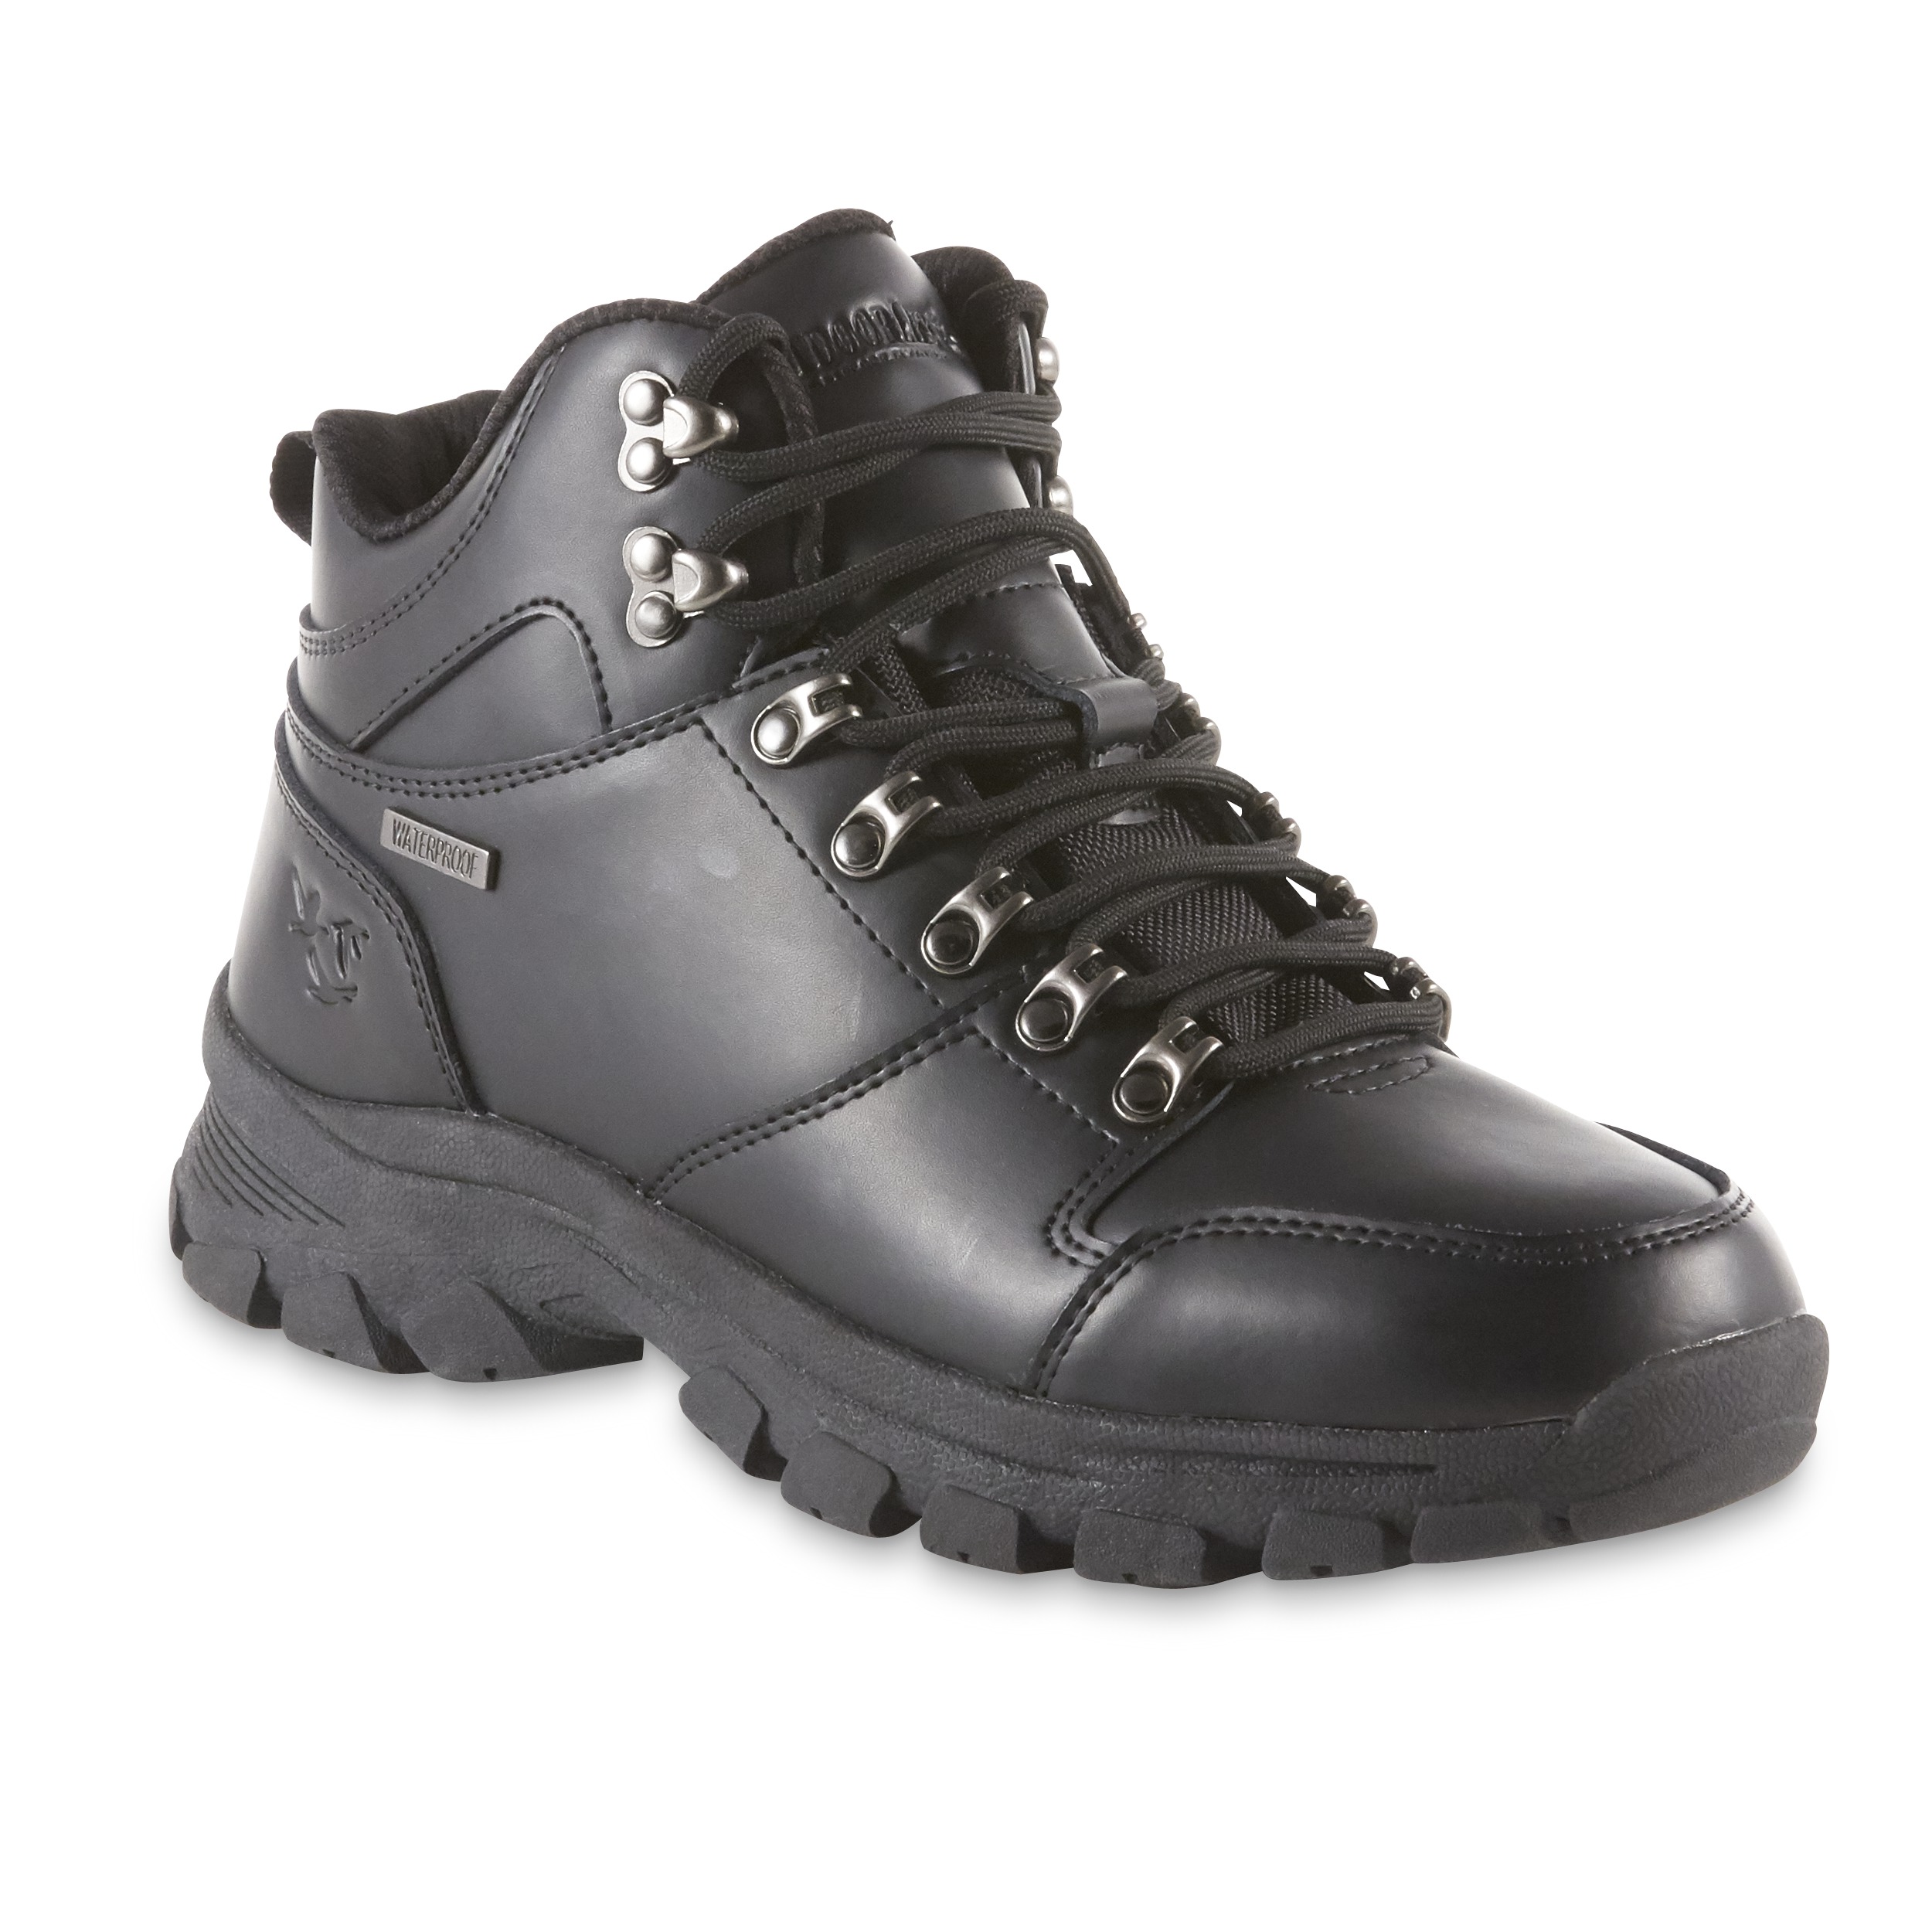 outdoor life waterproof boots